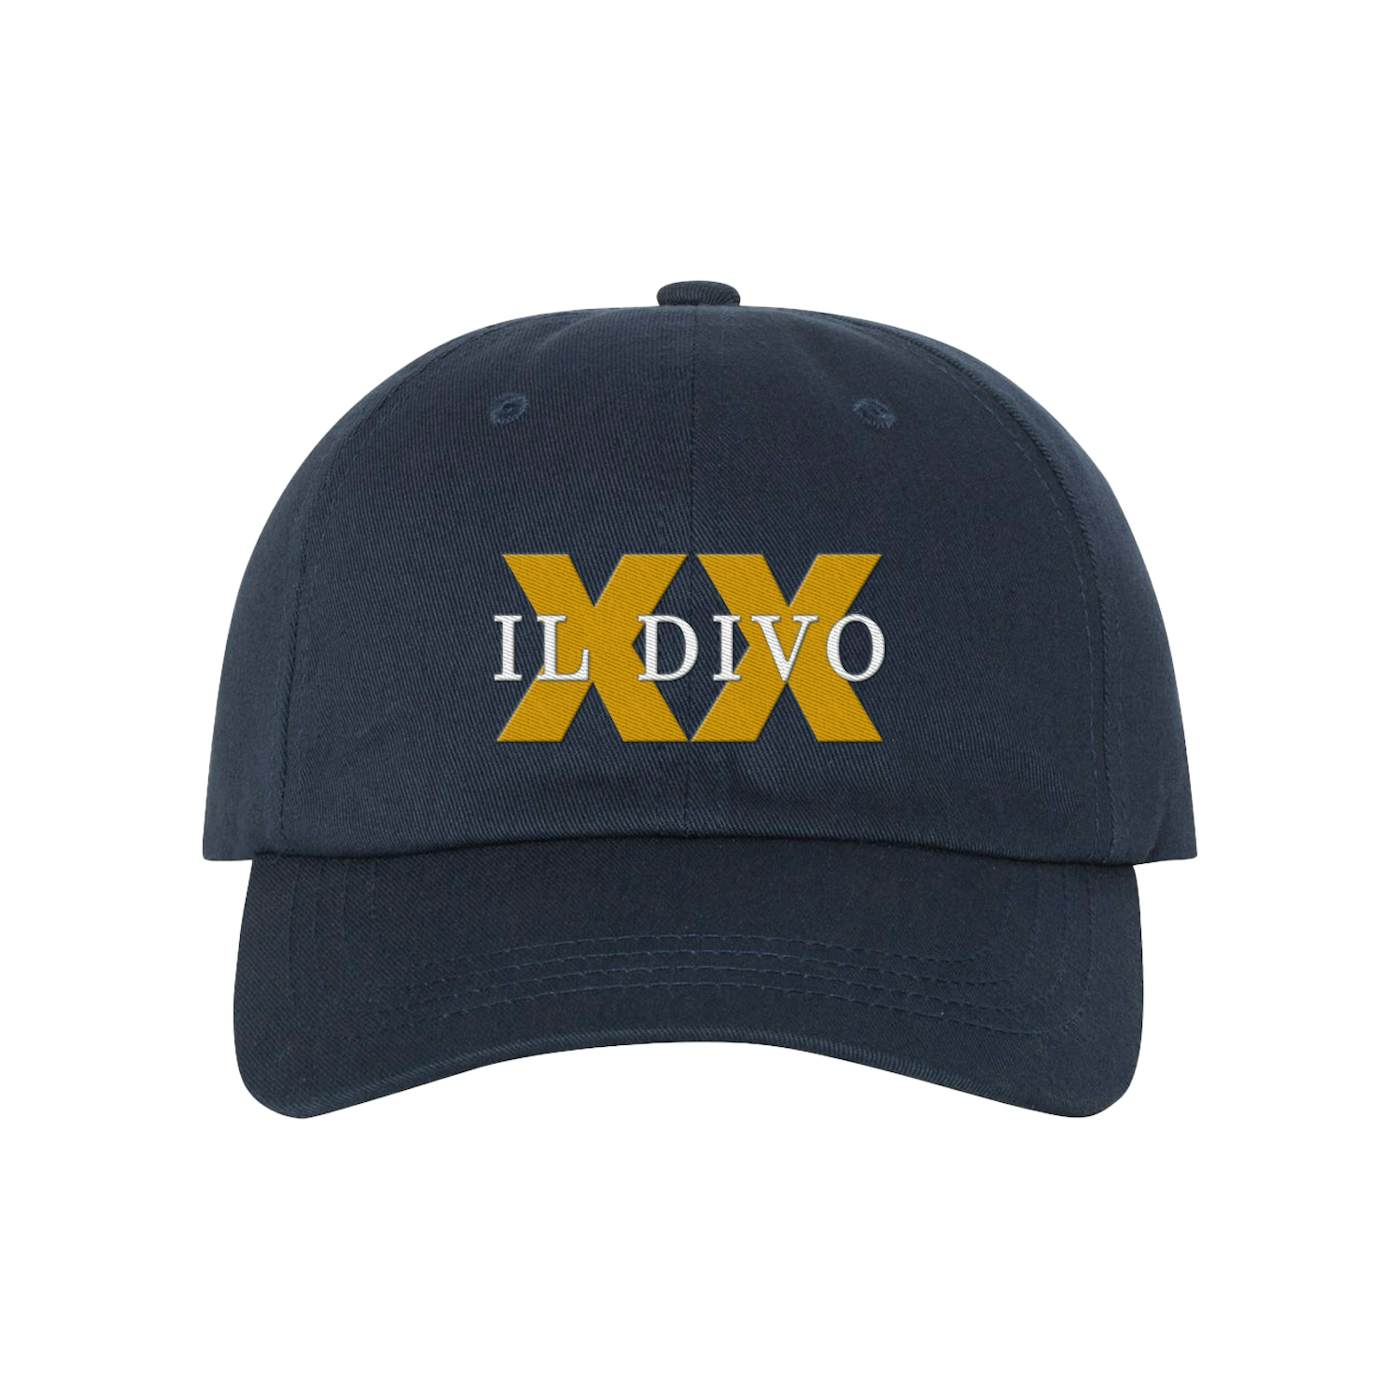 Il Divo XX Dad Hat